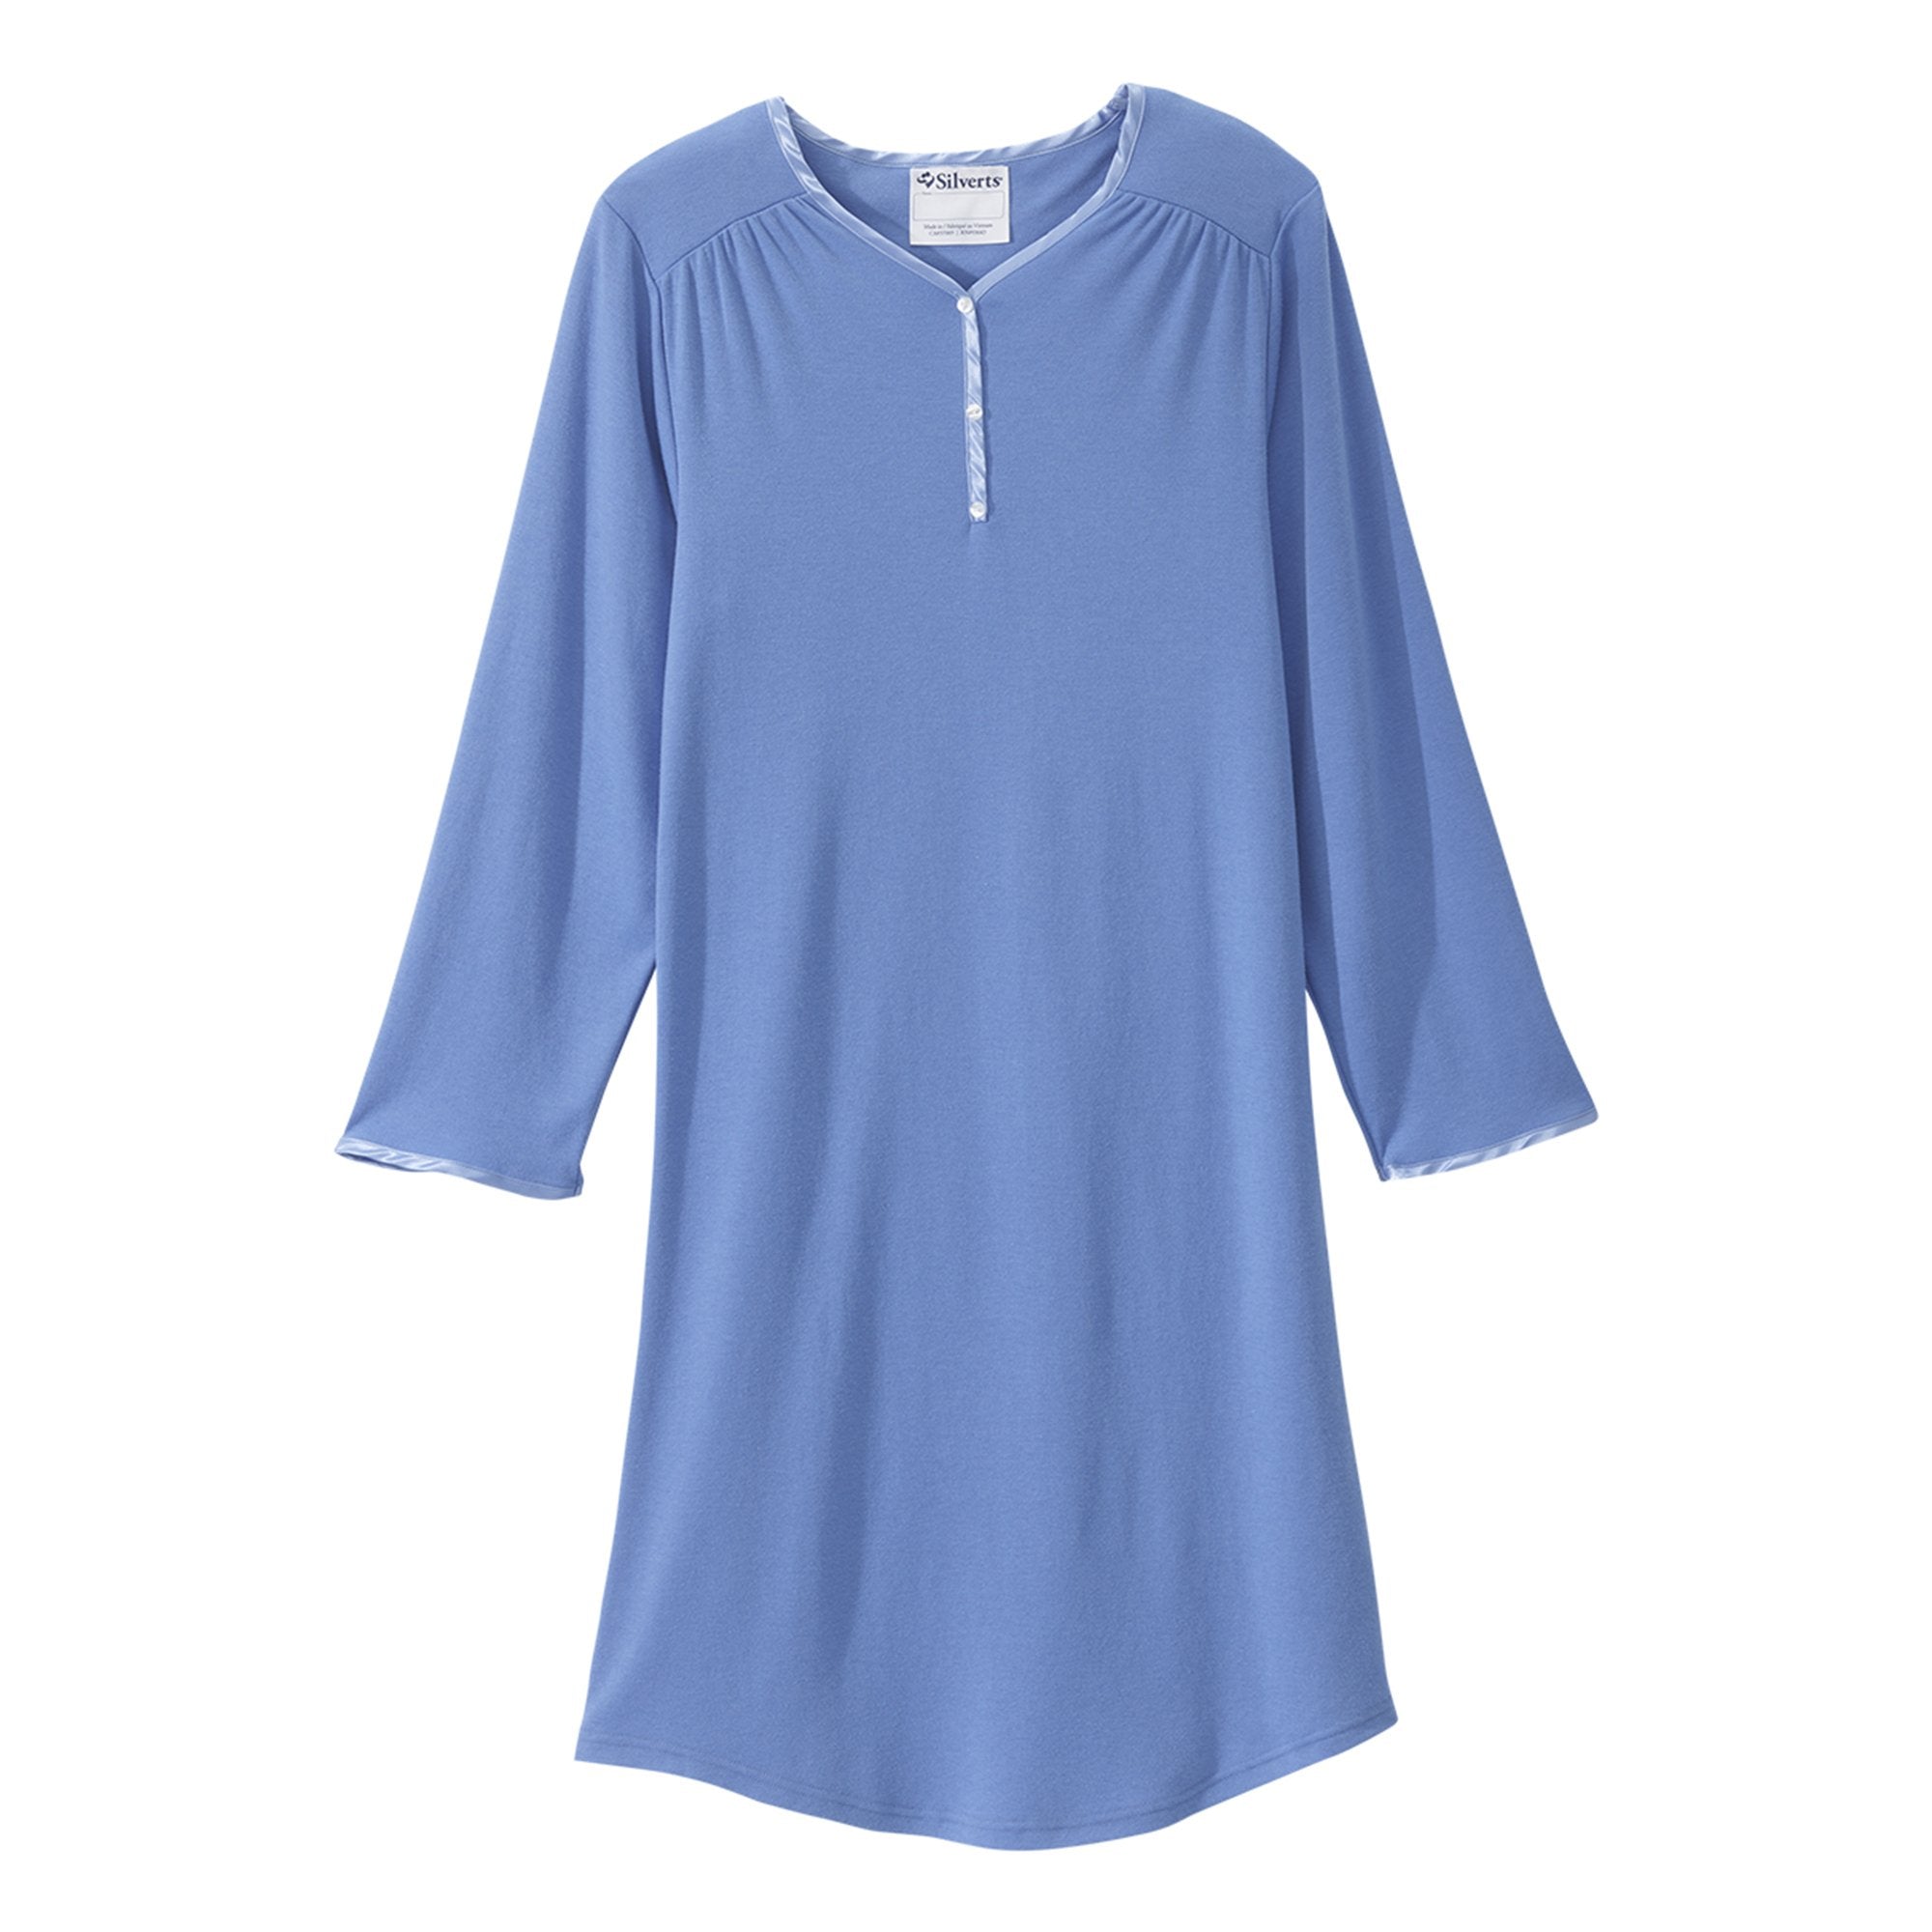 Silverts® Shoulder Snap Patient Exam Gown, 2X-Large, Blue (1 Unit)